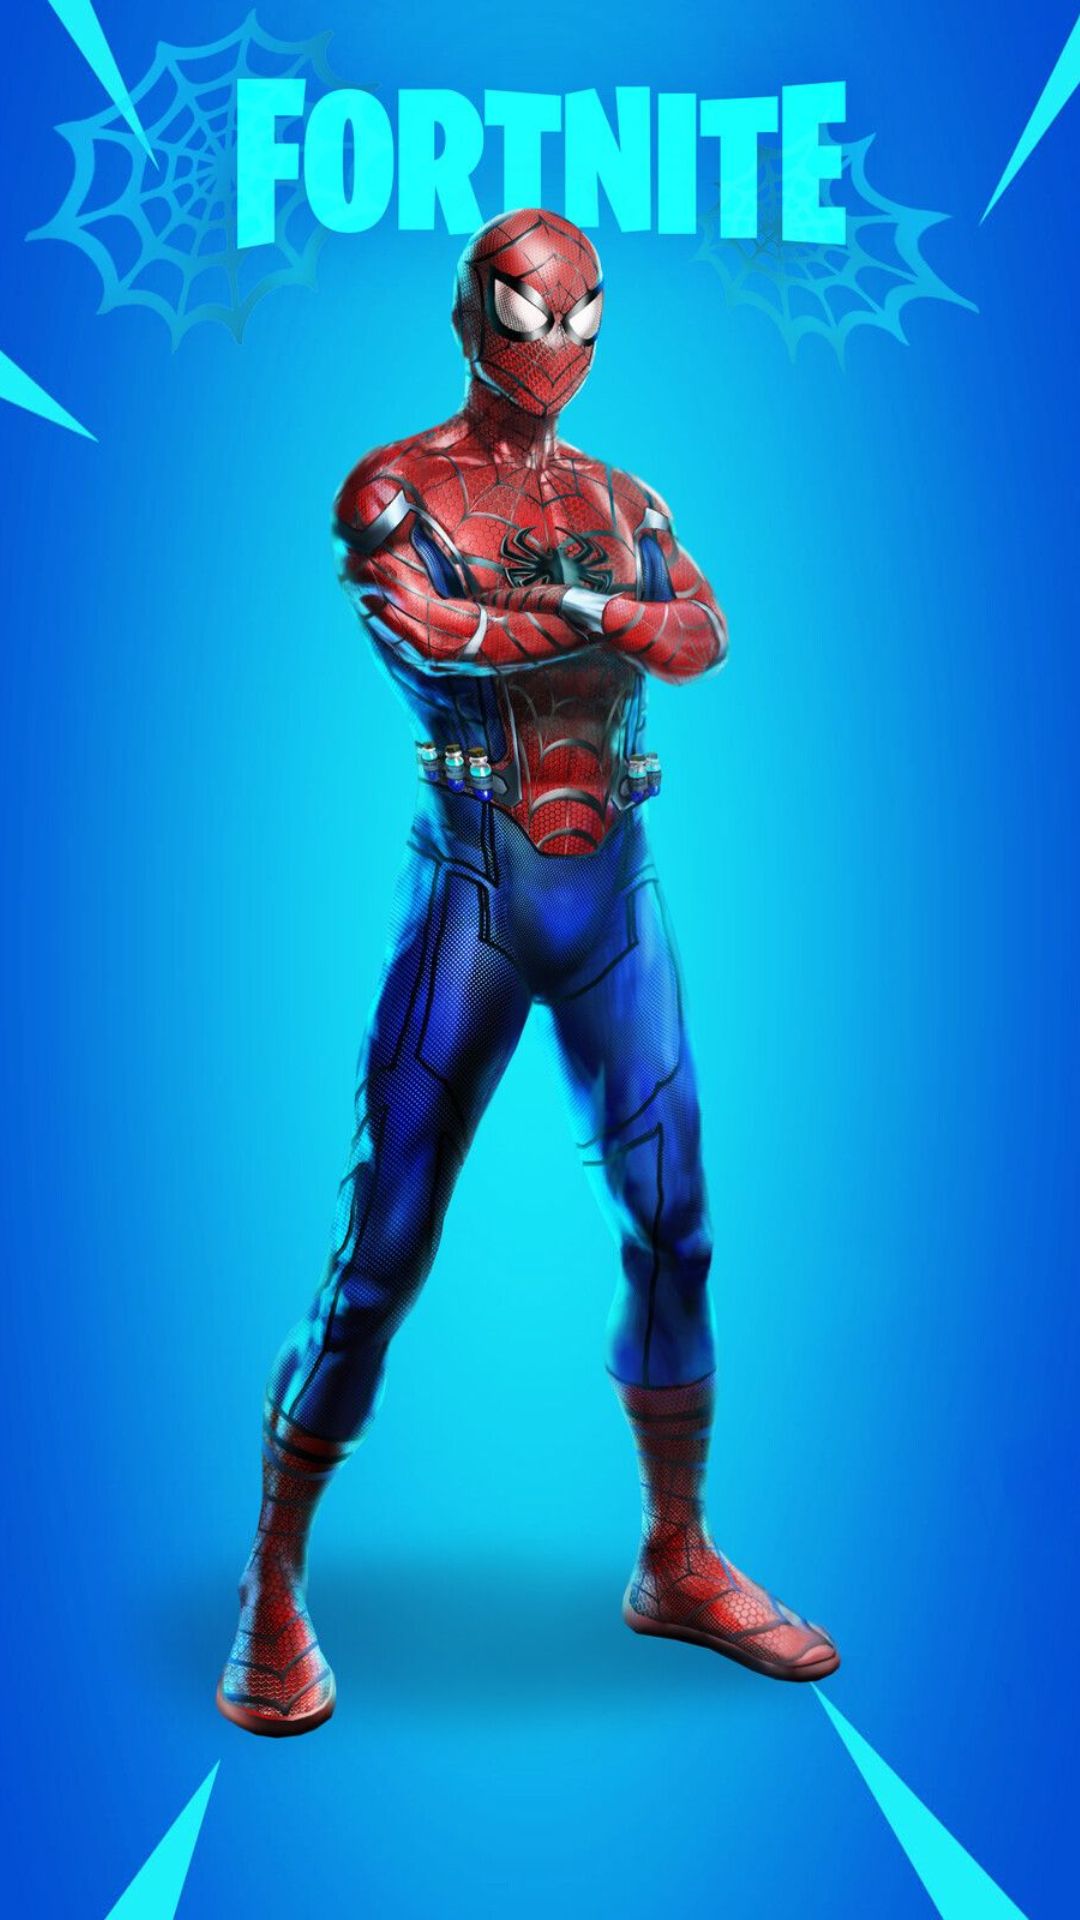 Fortnite Spider Man Wallpapers - Top 20 Best Fortnite Spider Man Backgrounds  Download